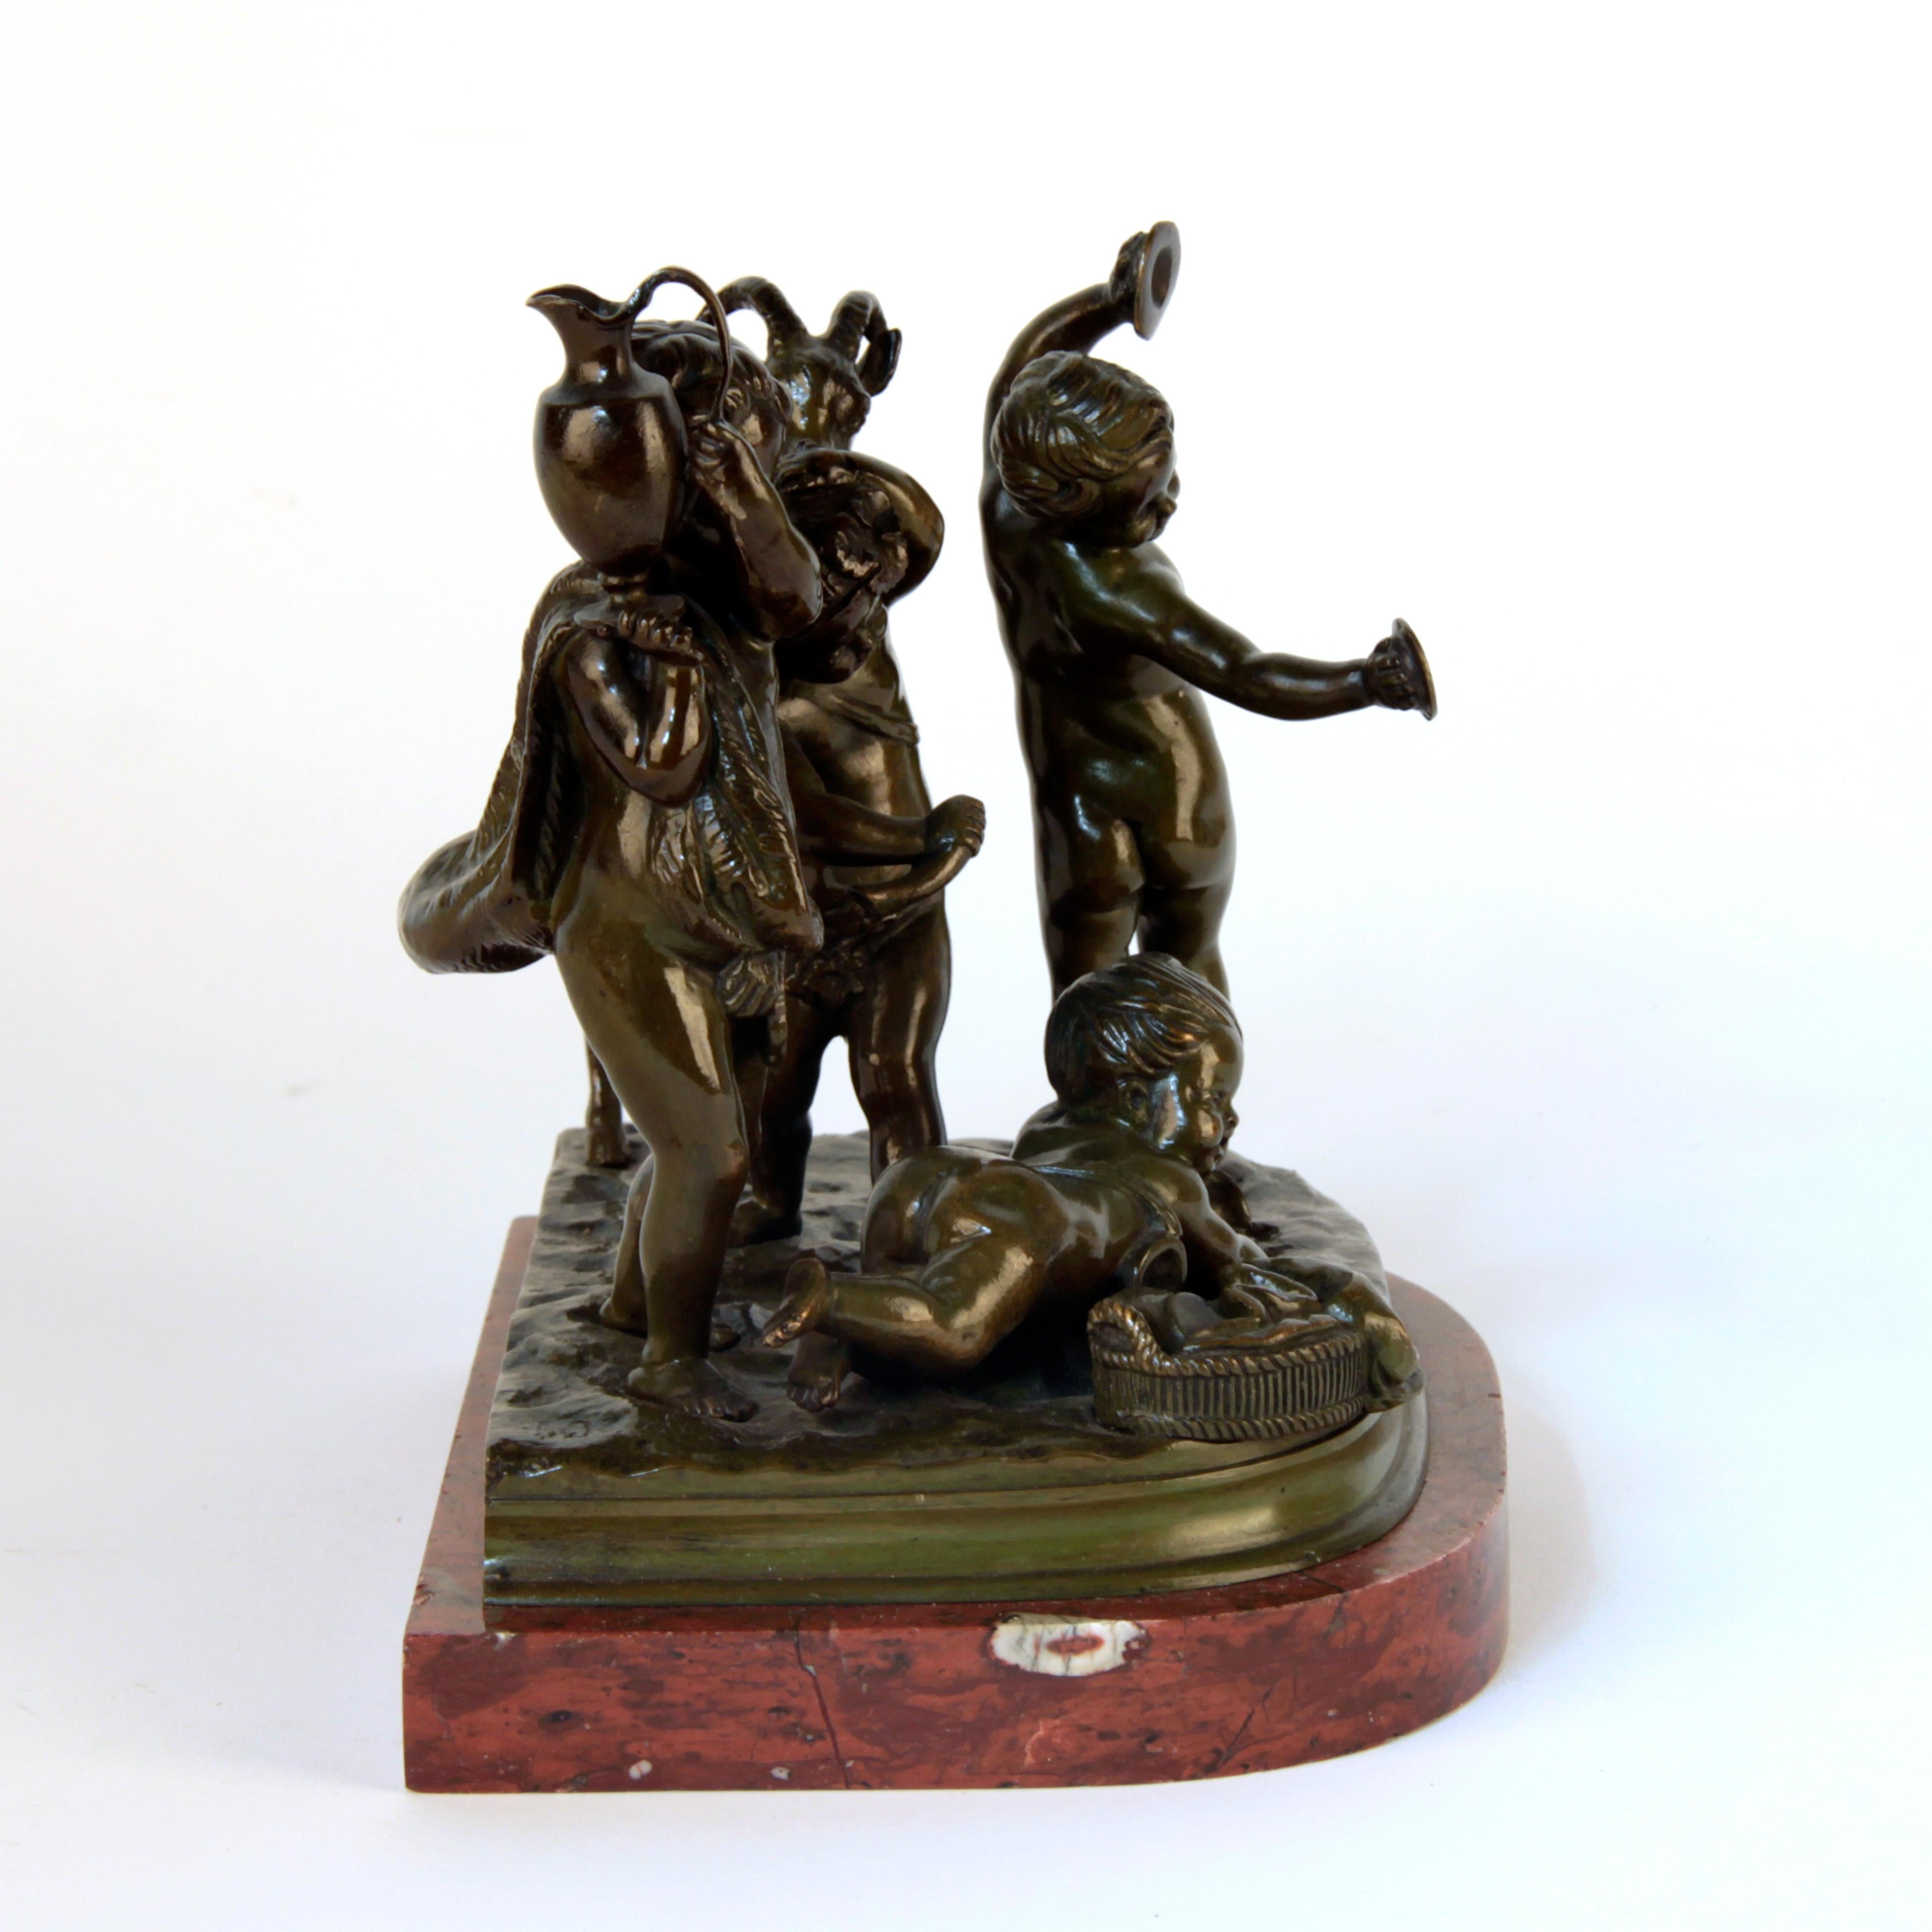 Bronzeputtis signiert von Clodion, um 1900
Schöne Patina und Qualität
ausgezeichneter Zustand.